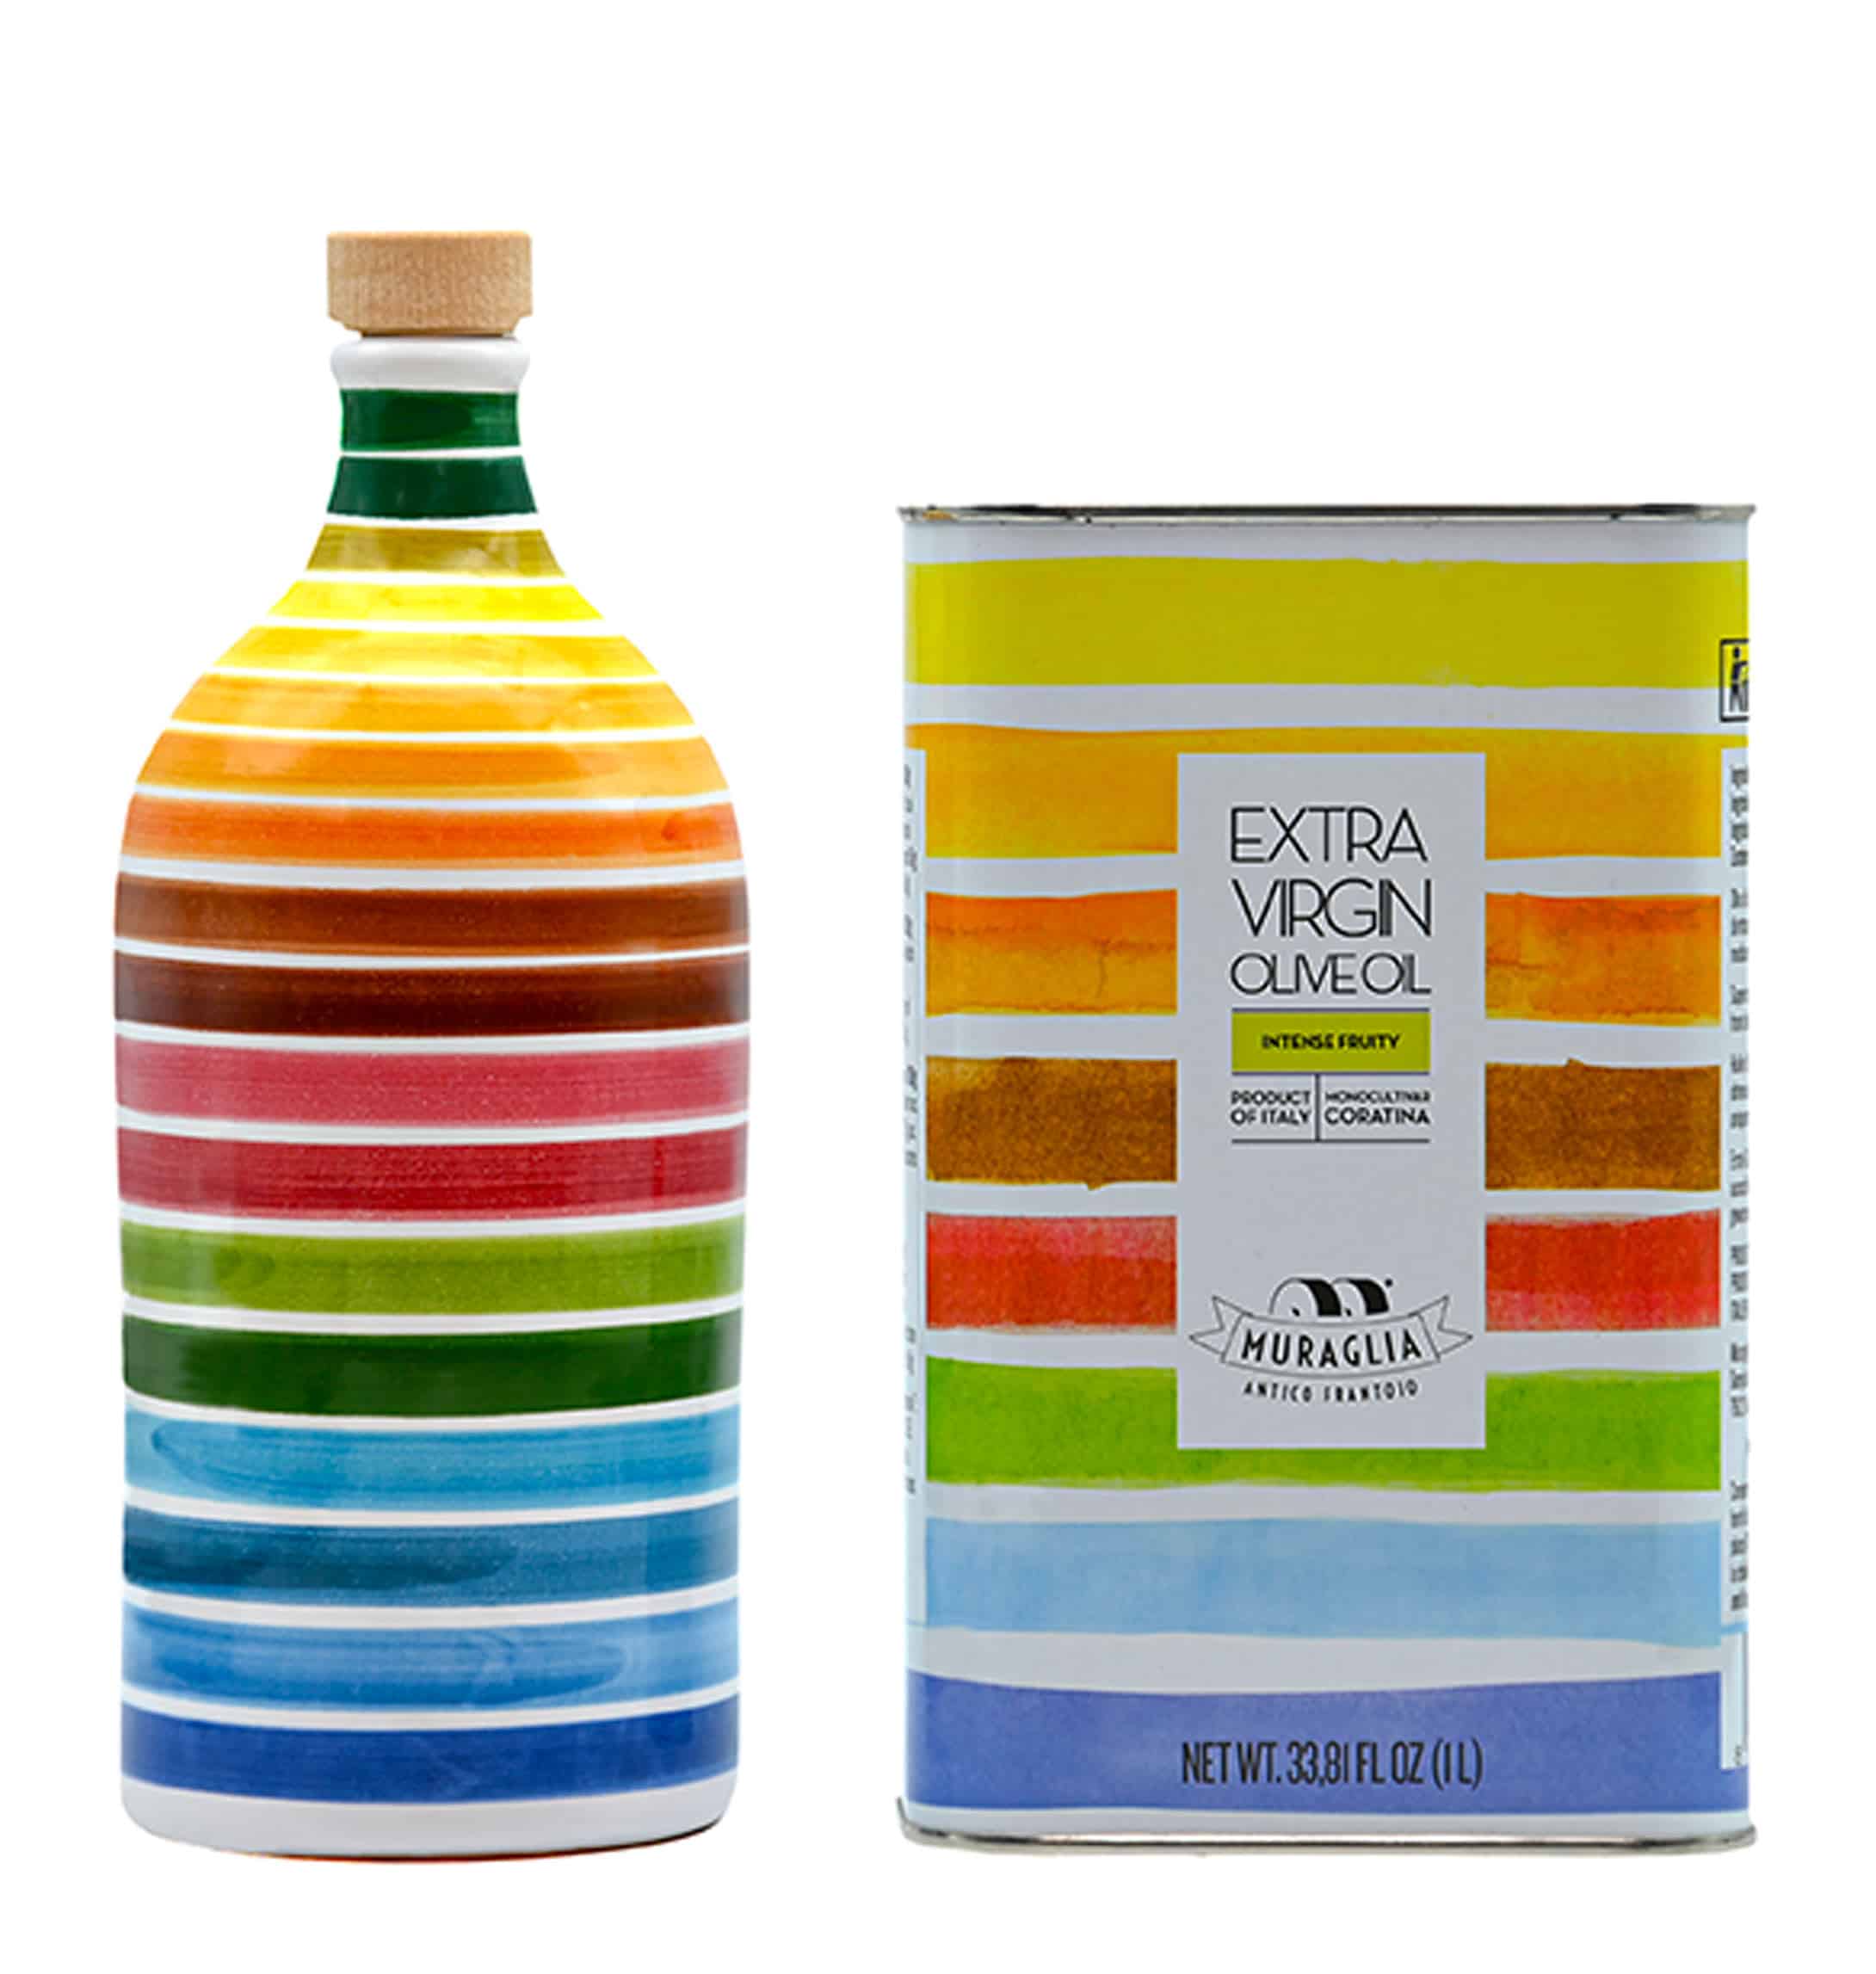 Set mit Ölflasche und Ölkanister in Regenbogenfarben - Frantoio Muraglia